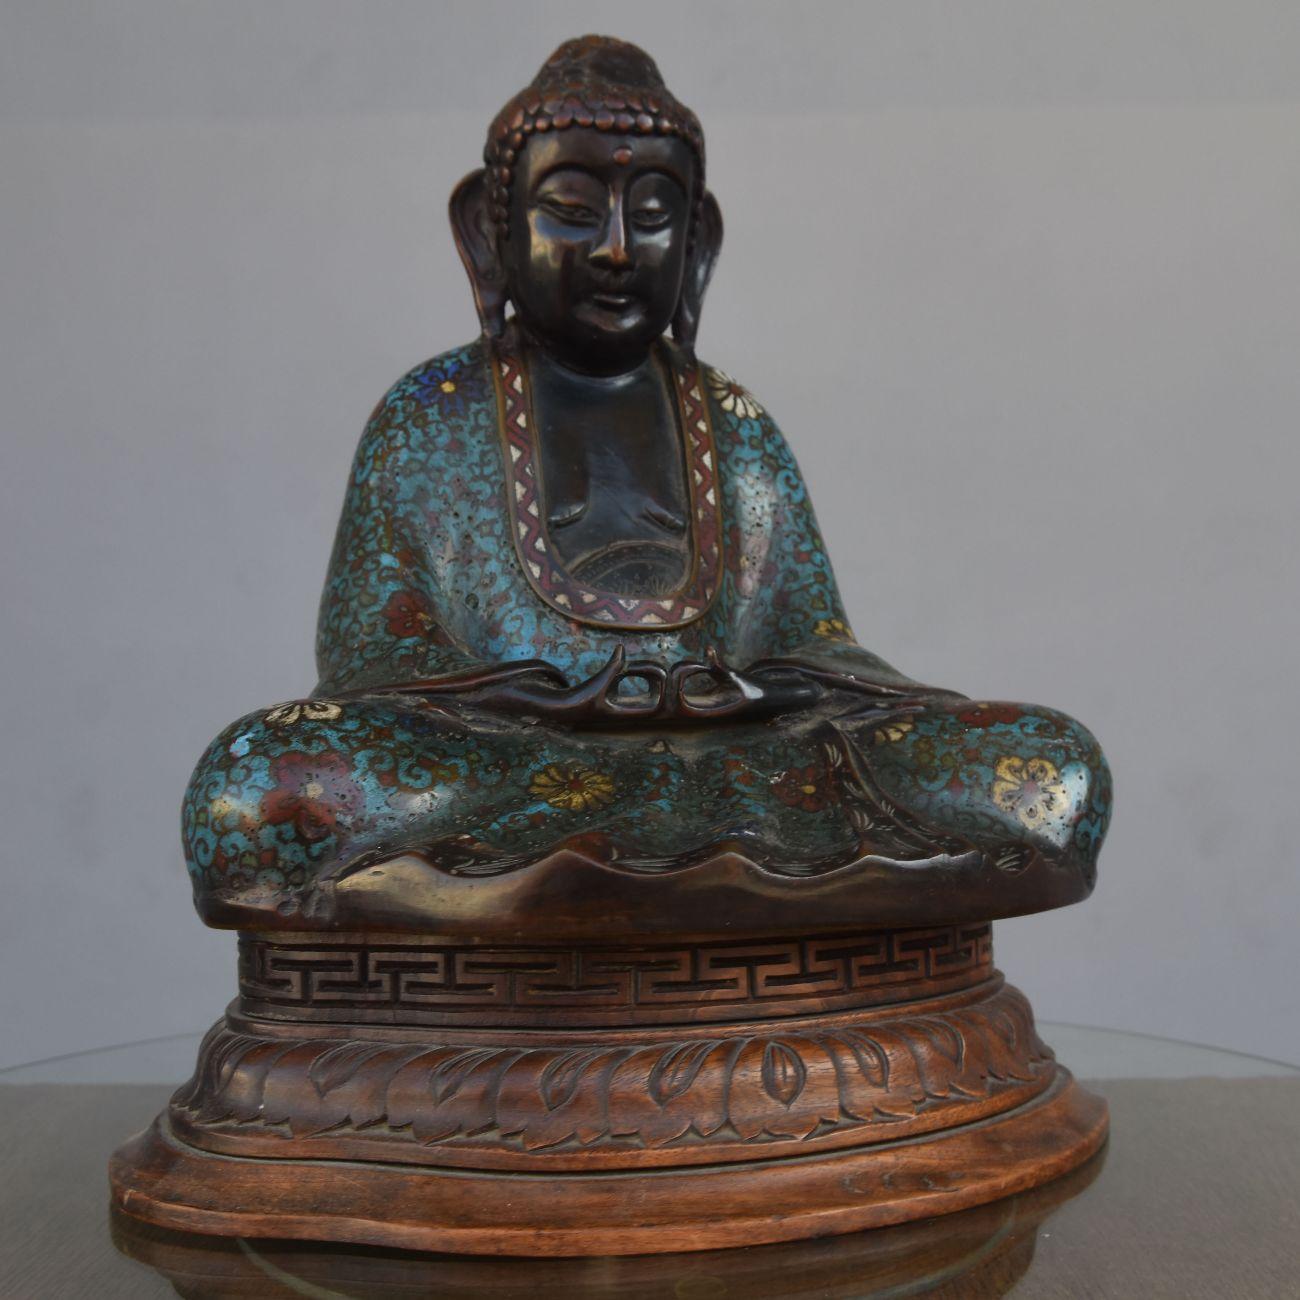 Bouddha en bronze cloisonné sur son socle en bois. Époque XIXème.